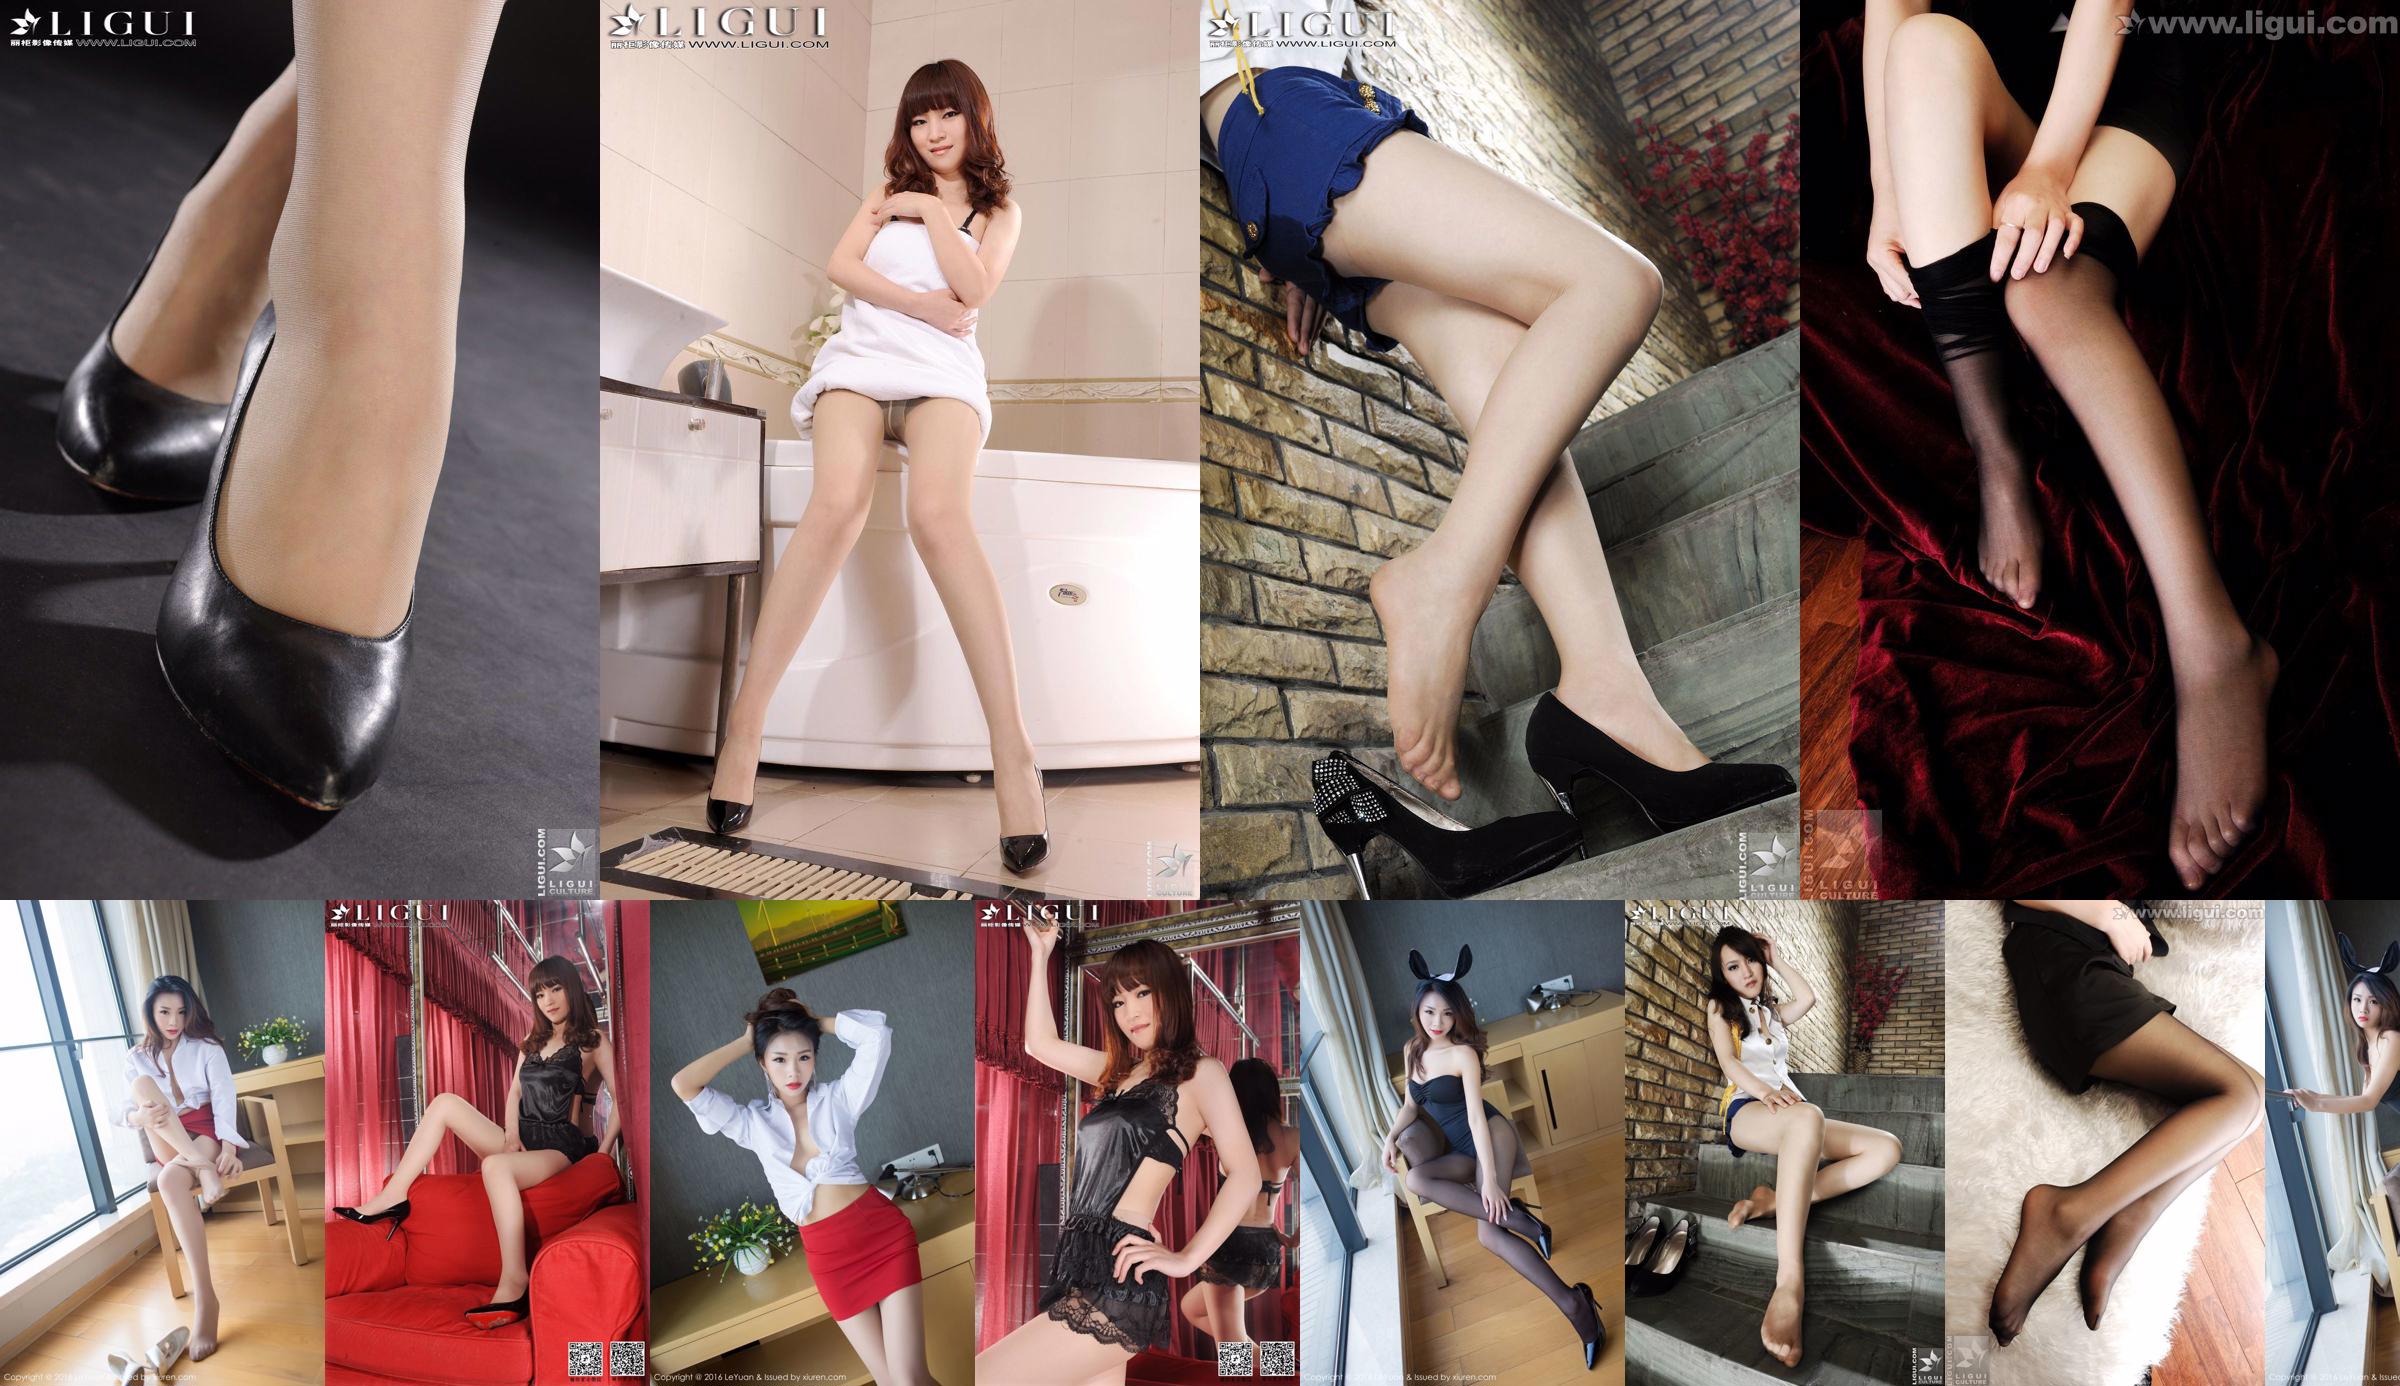 Modella Tina "La bellezza seducente di una segretaria femminile" [丽 柜 LiGui] Foto di belle gambe e piedi No.62ba95 Pagina 7